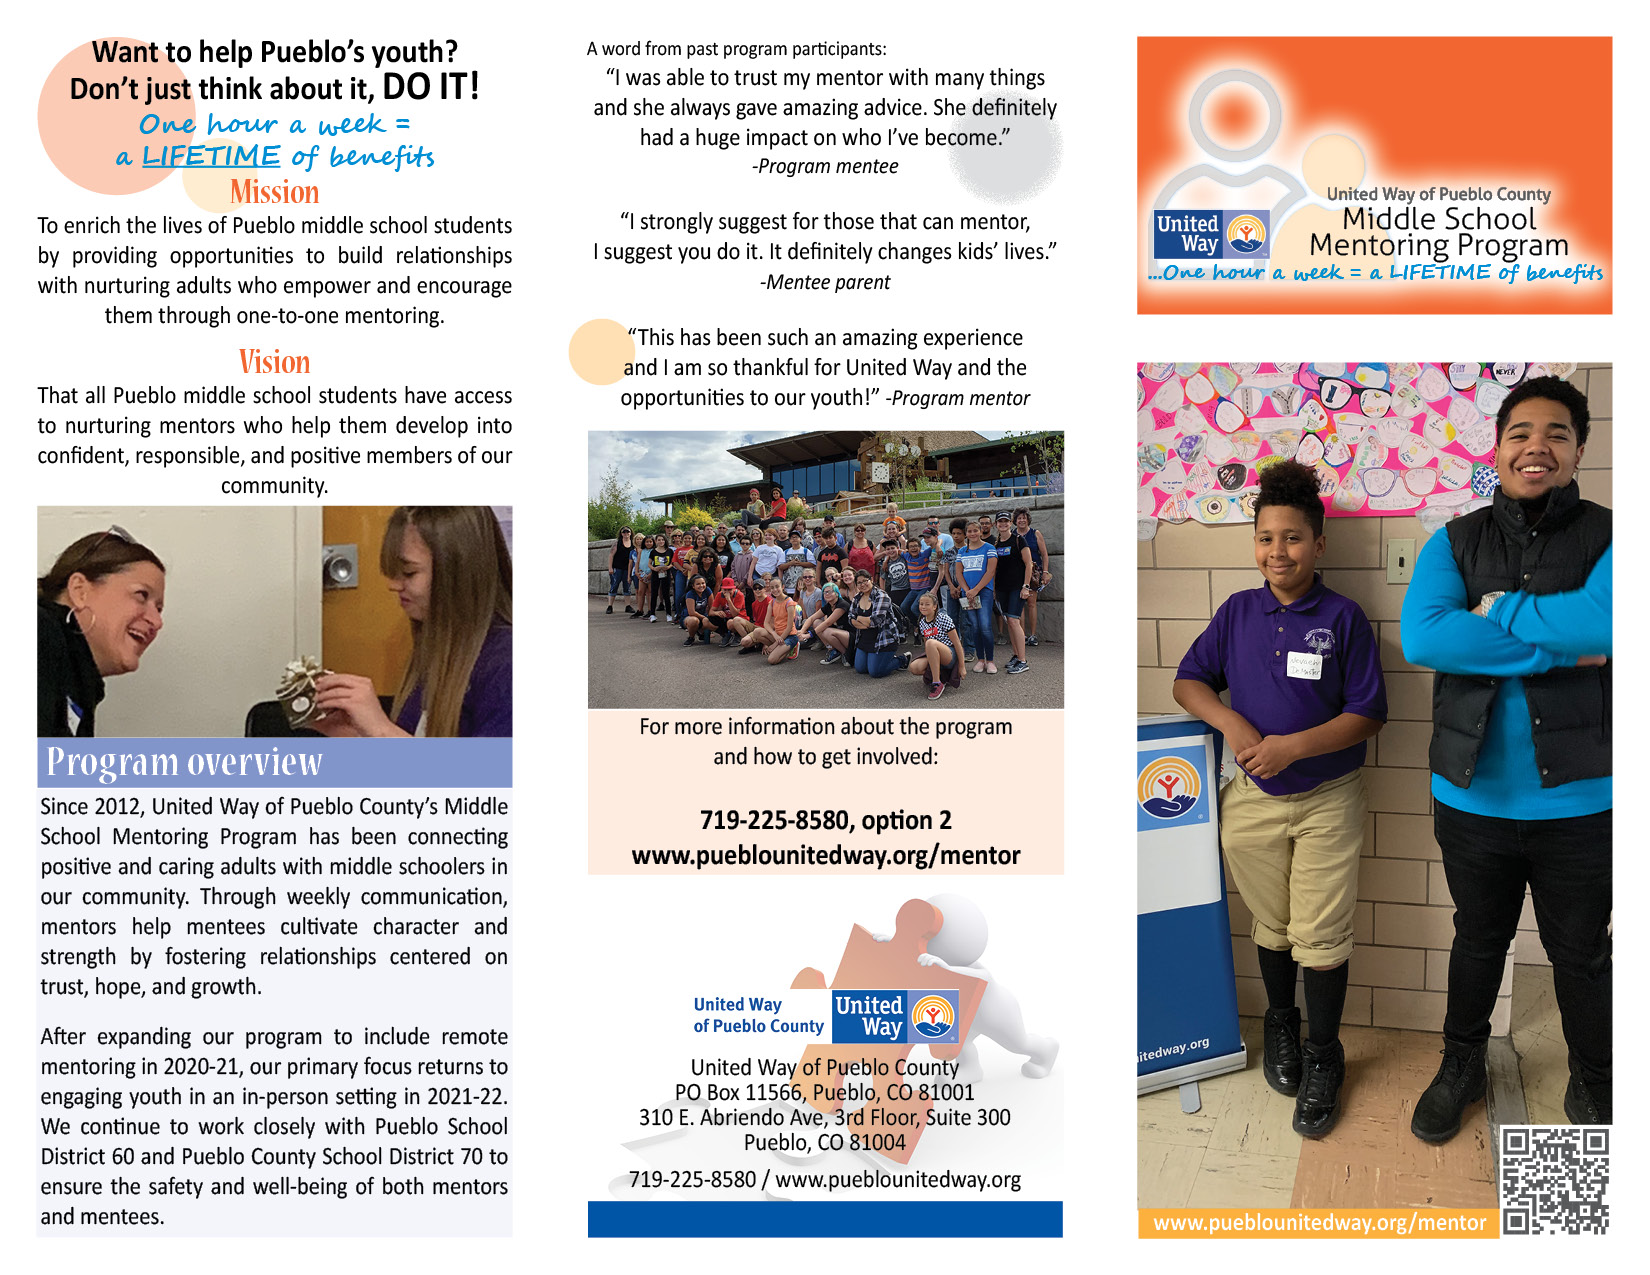 UWPC Middle School Mentoring Program Brochure